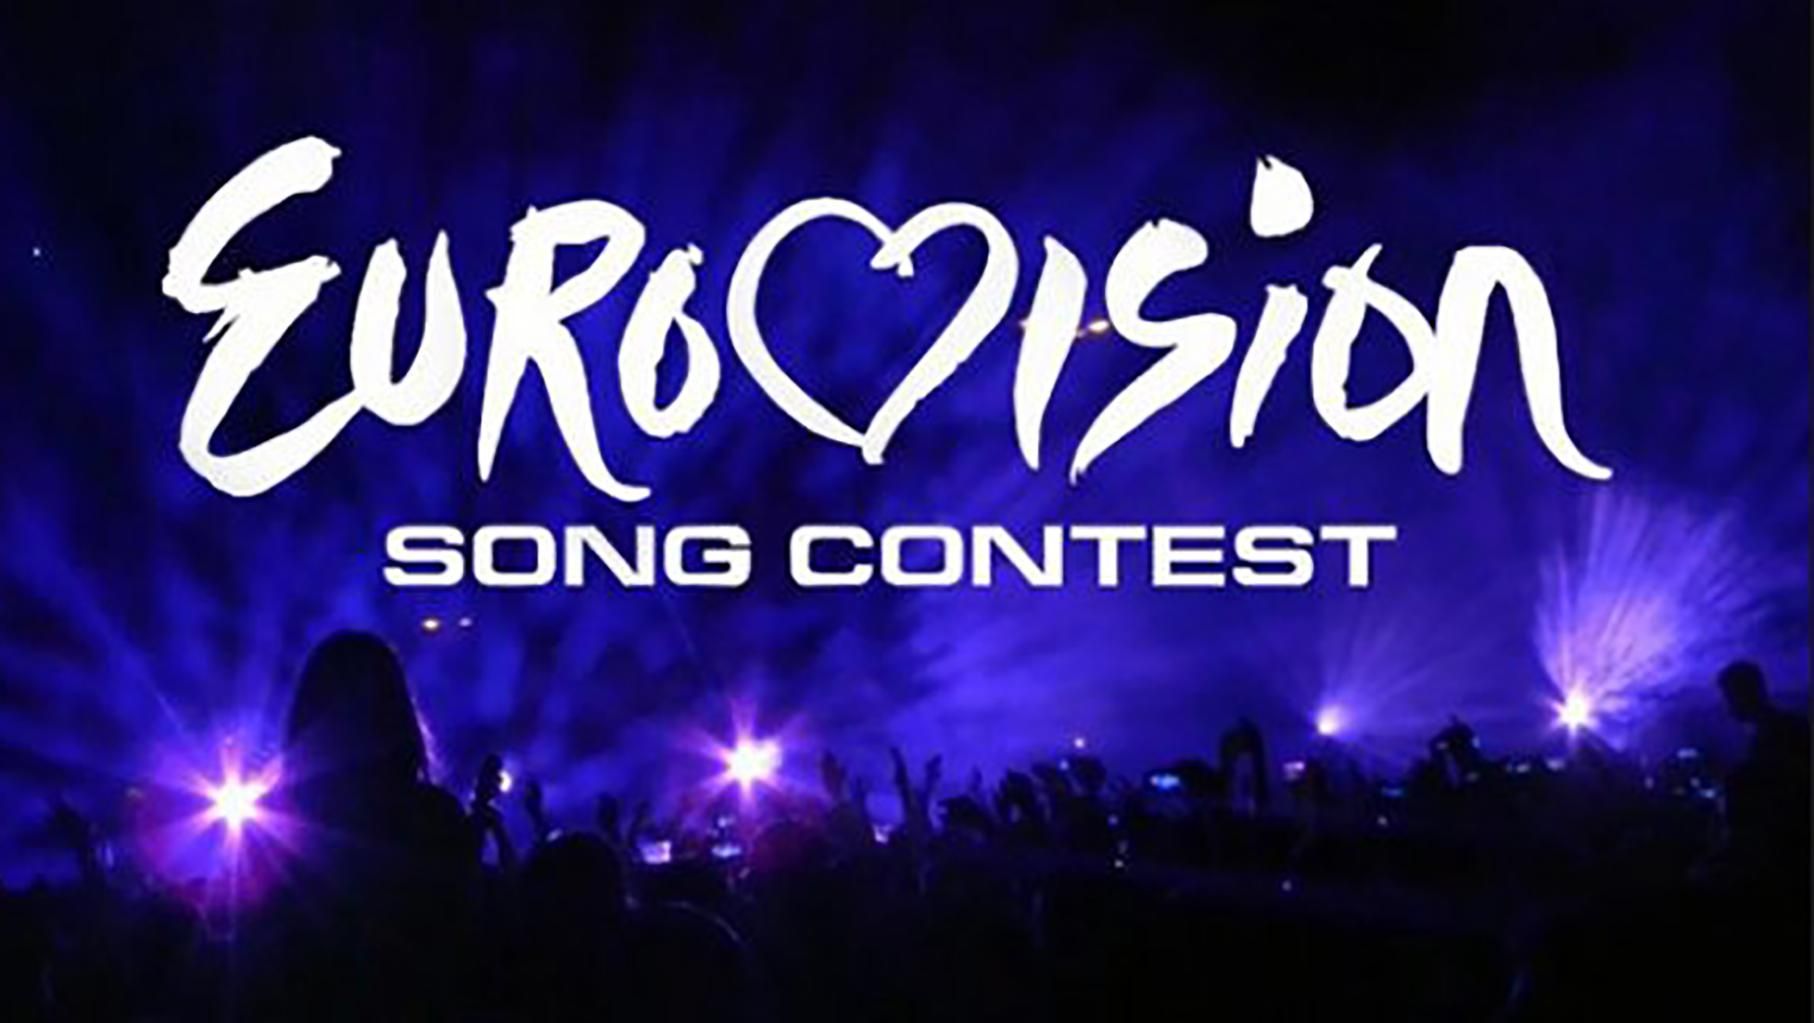 Євробачення 2019 - дата проведення конкурсу в 2019 році